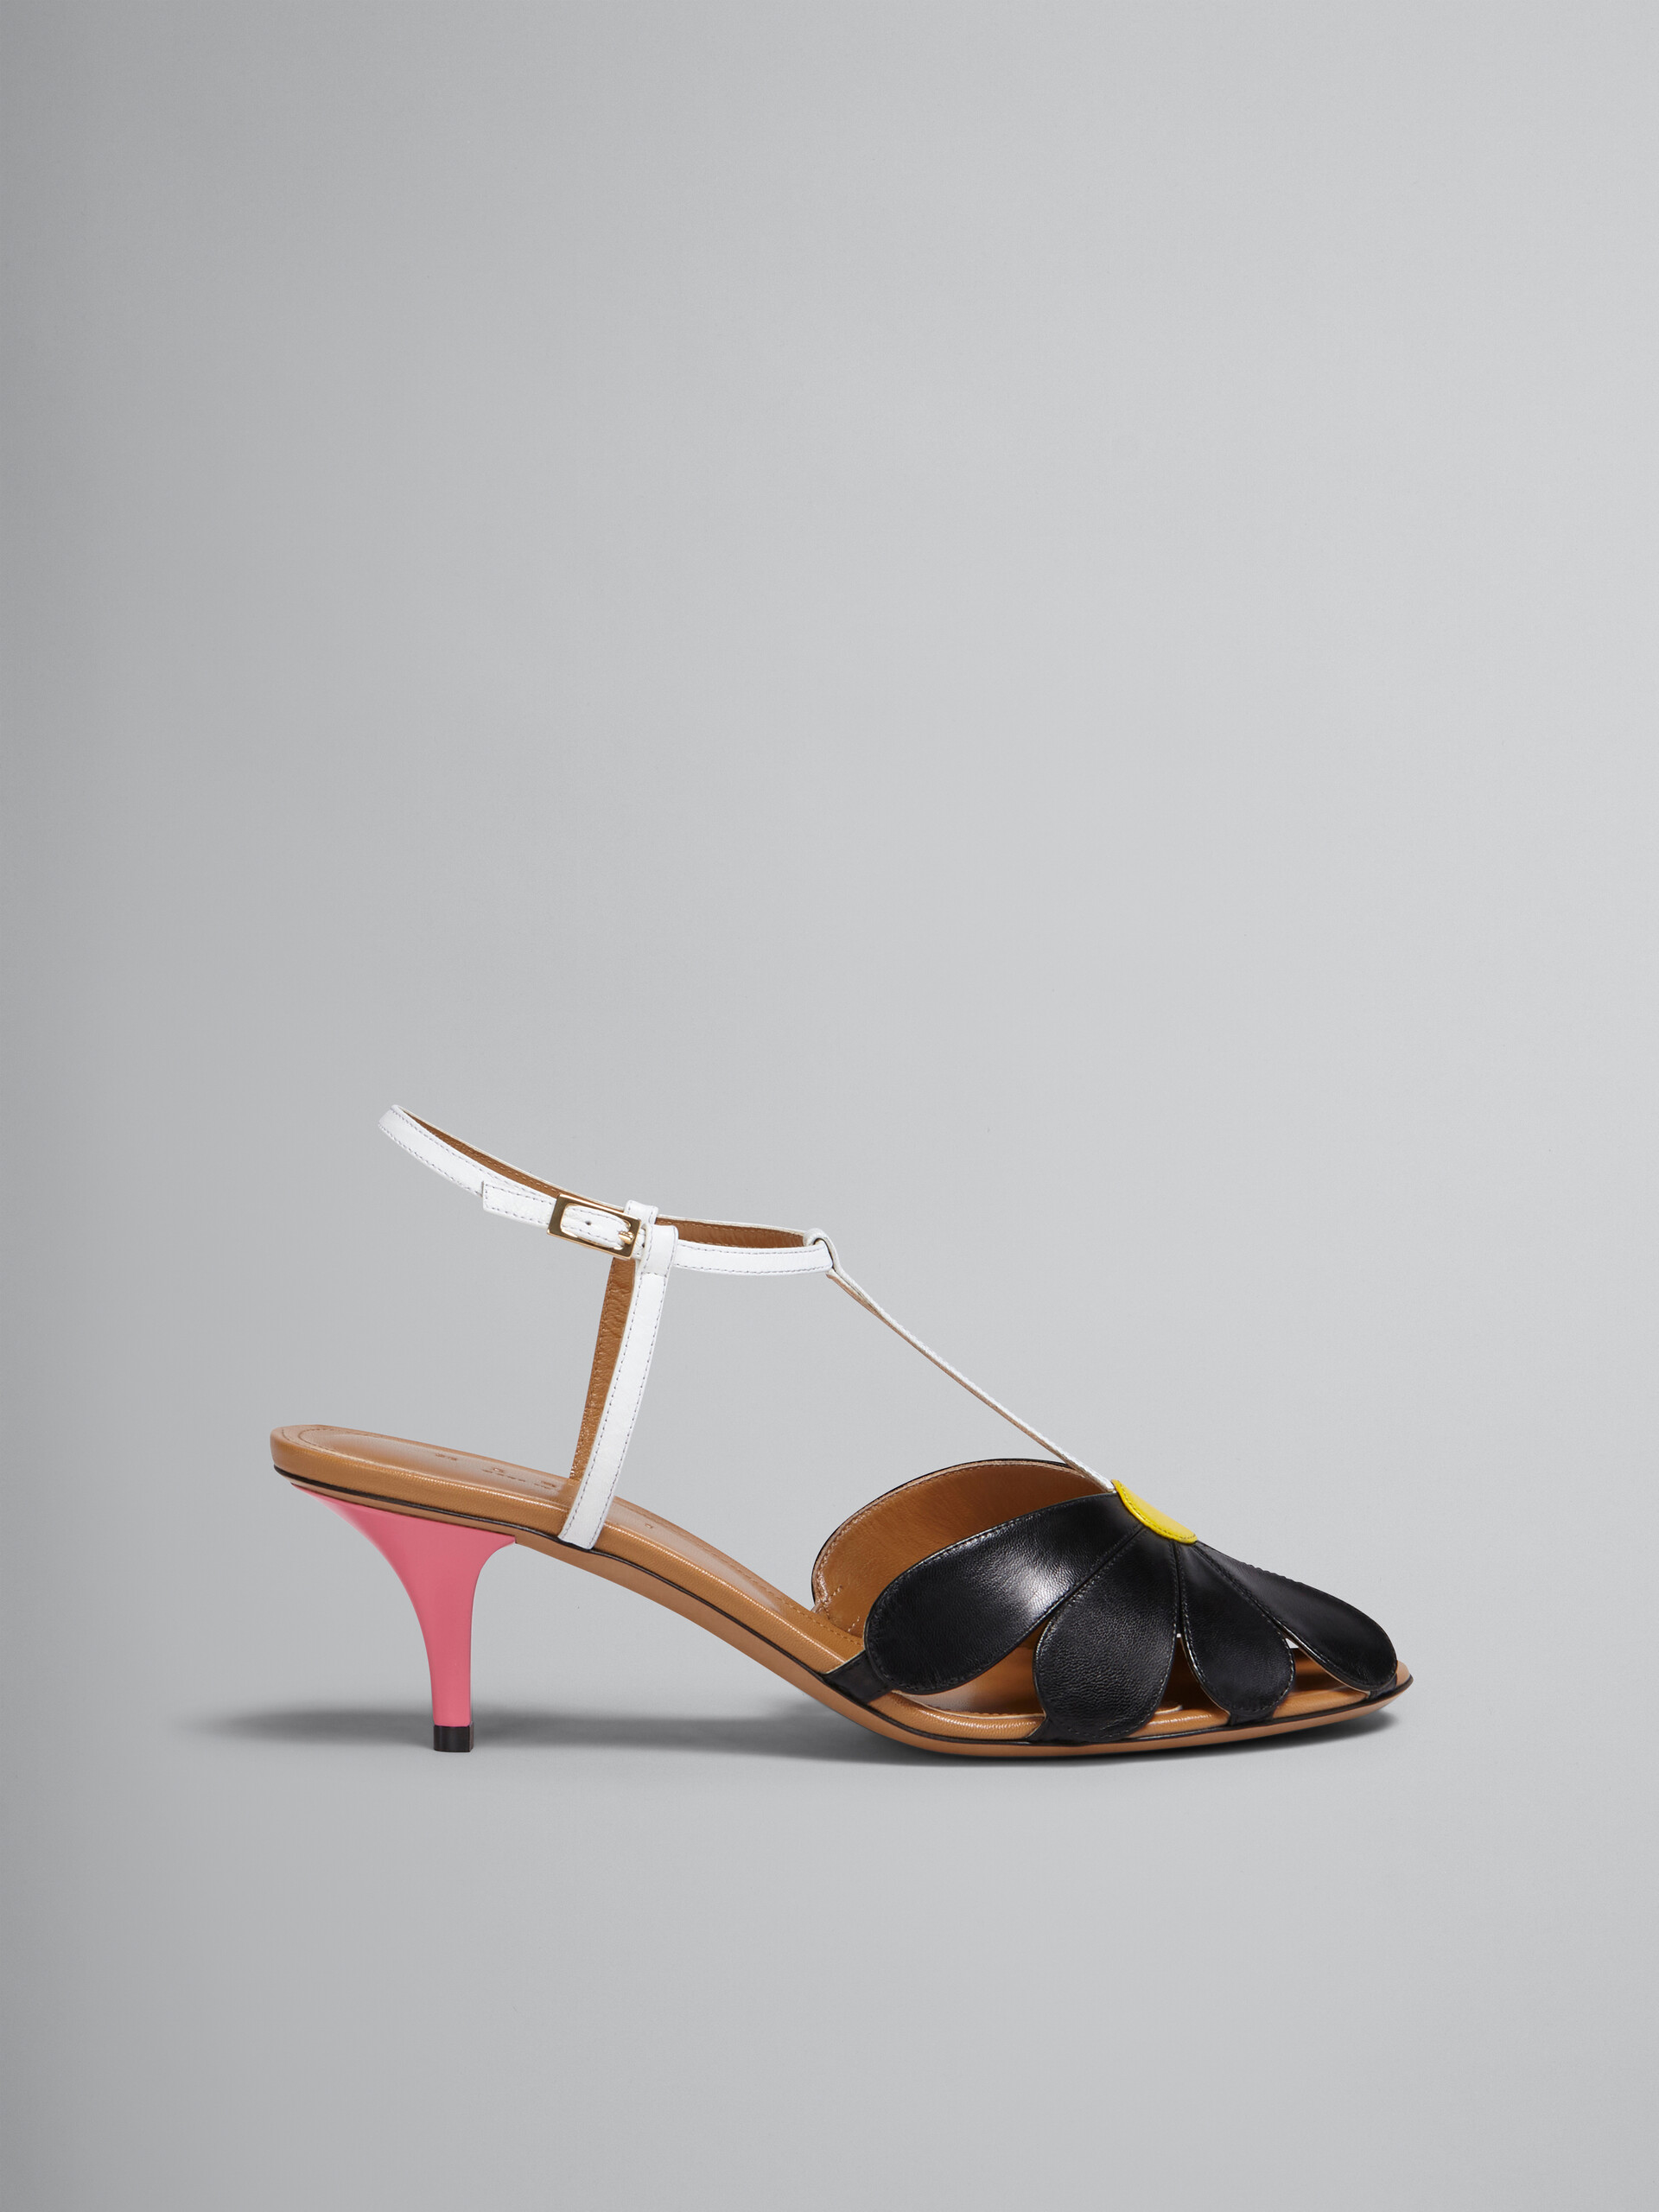 Leather flower sandal - Sandals - Image 1